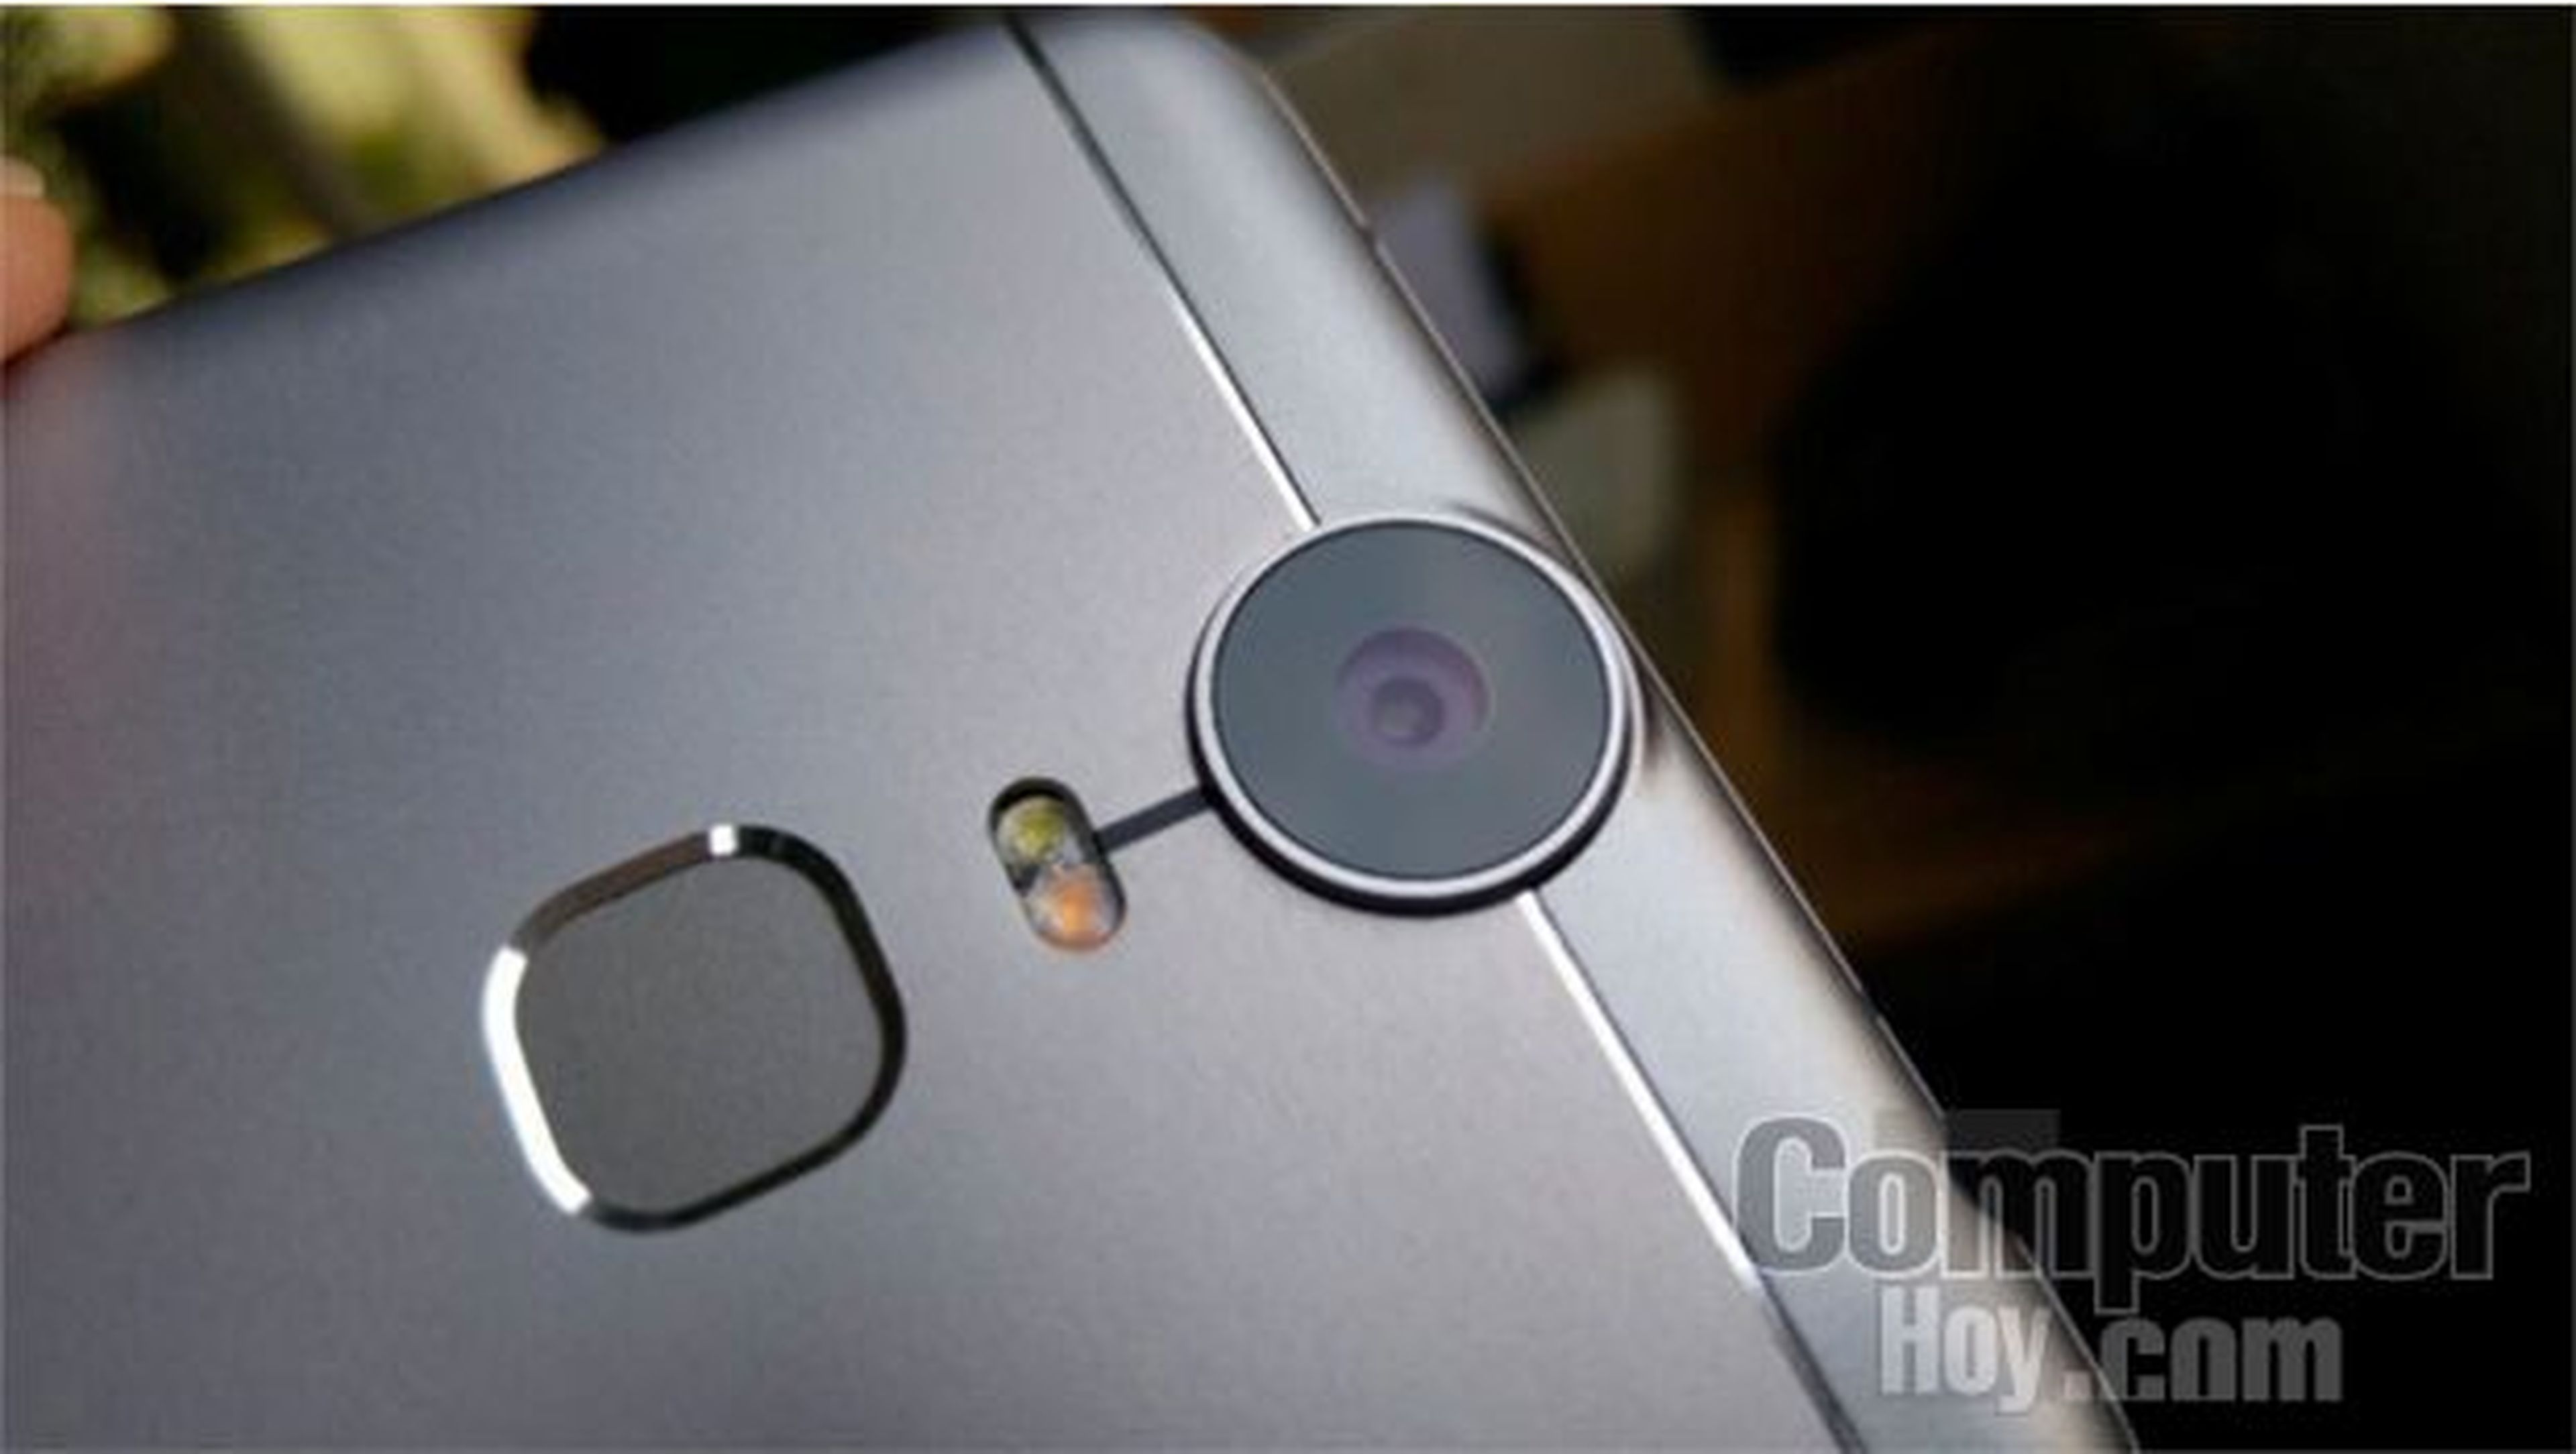 Se ha conocido que el próximo smartphone de Oukitel incluirá conectividad 4G LTE, NFC y cámaras fabricadas por Sony.